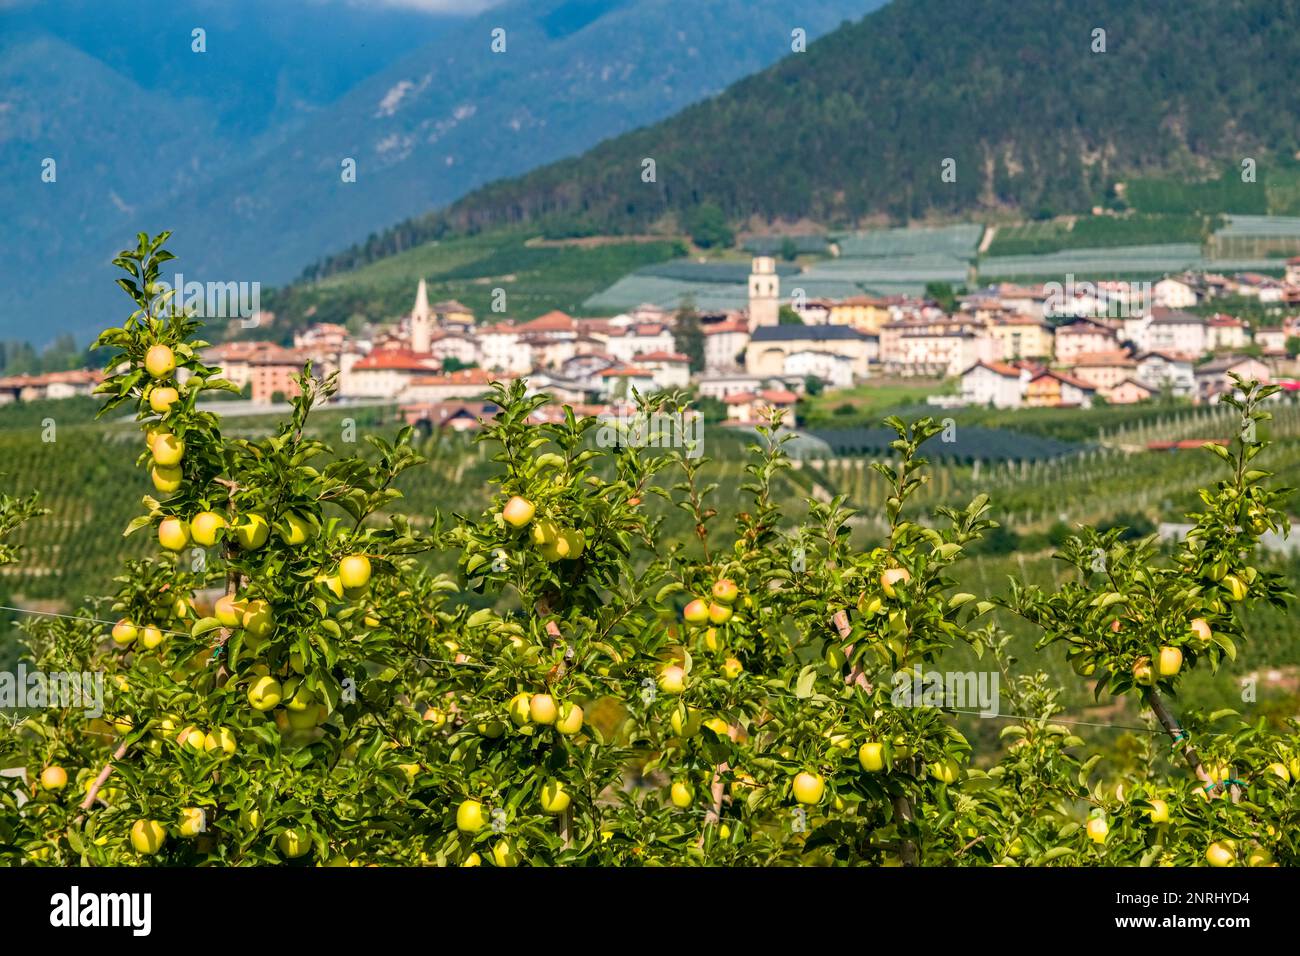 Paesaggio agricolo con colline, meleti e il piccolo paese di Revo in lontananza. Foto Stock